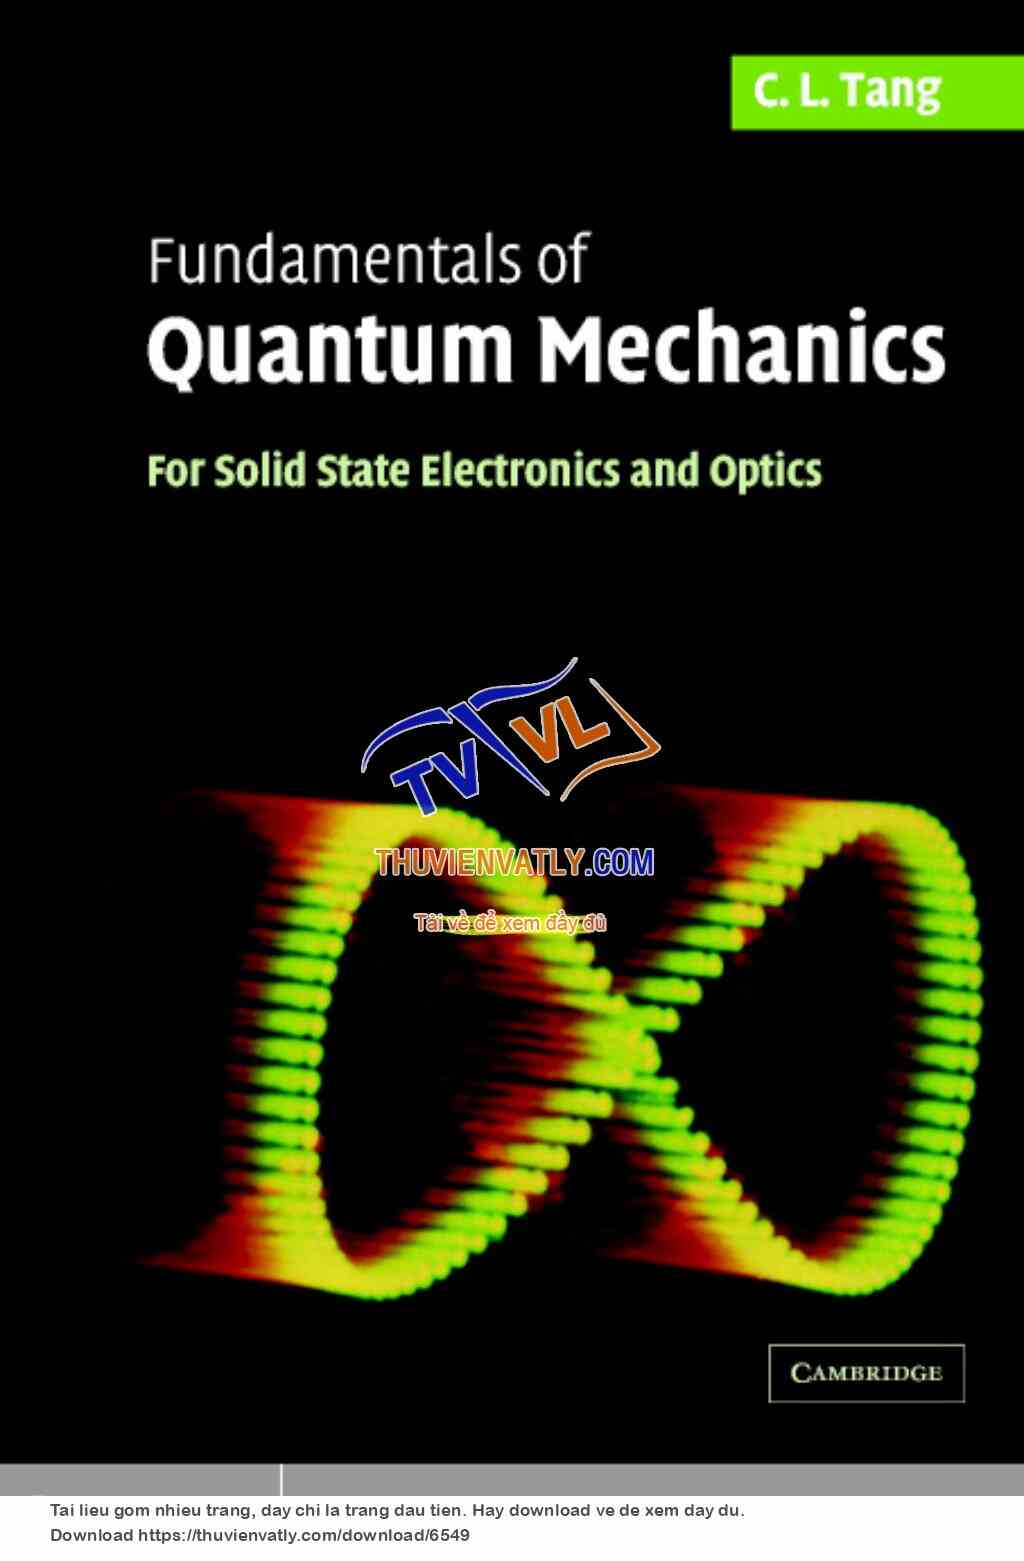 Fundamentals of Quantum Mechanics for Solid State Electronics, Optics